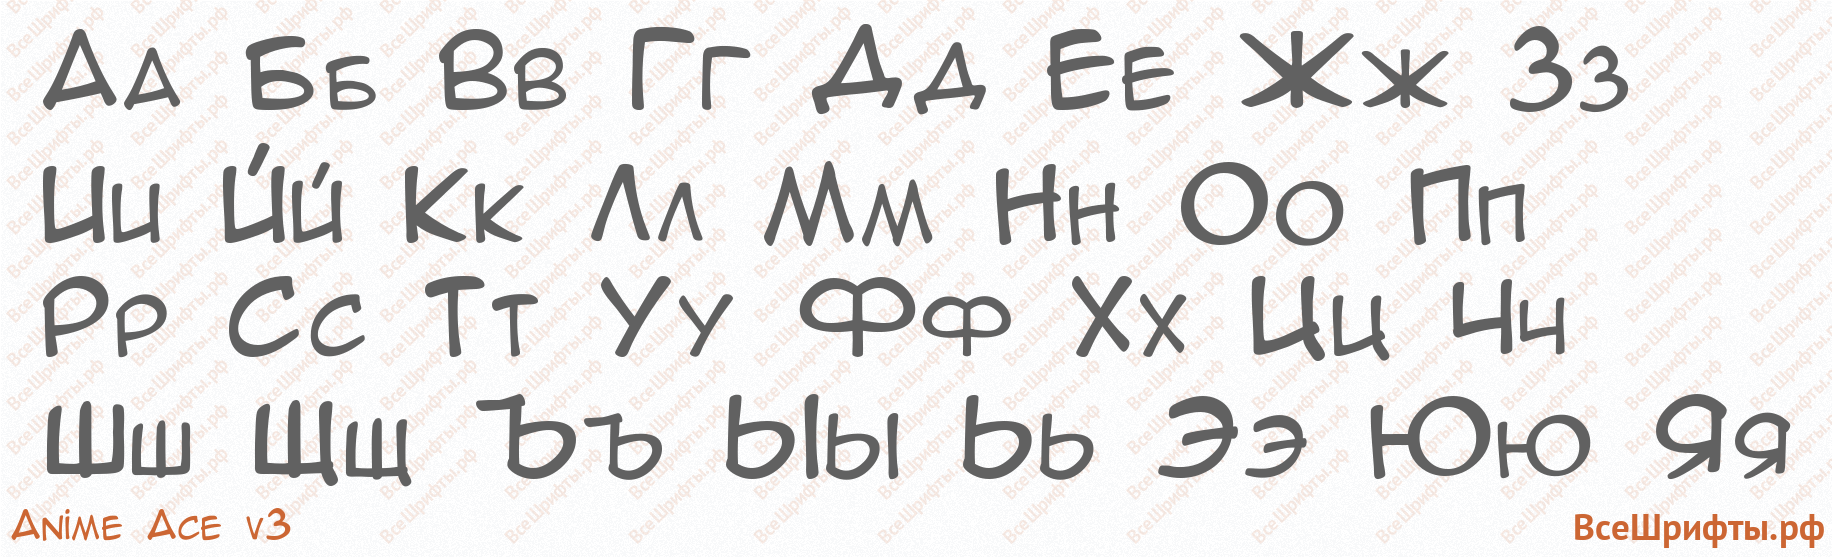 Шрифт Anime Ace v3 с русскими буквами